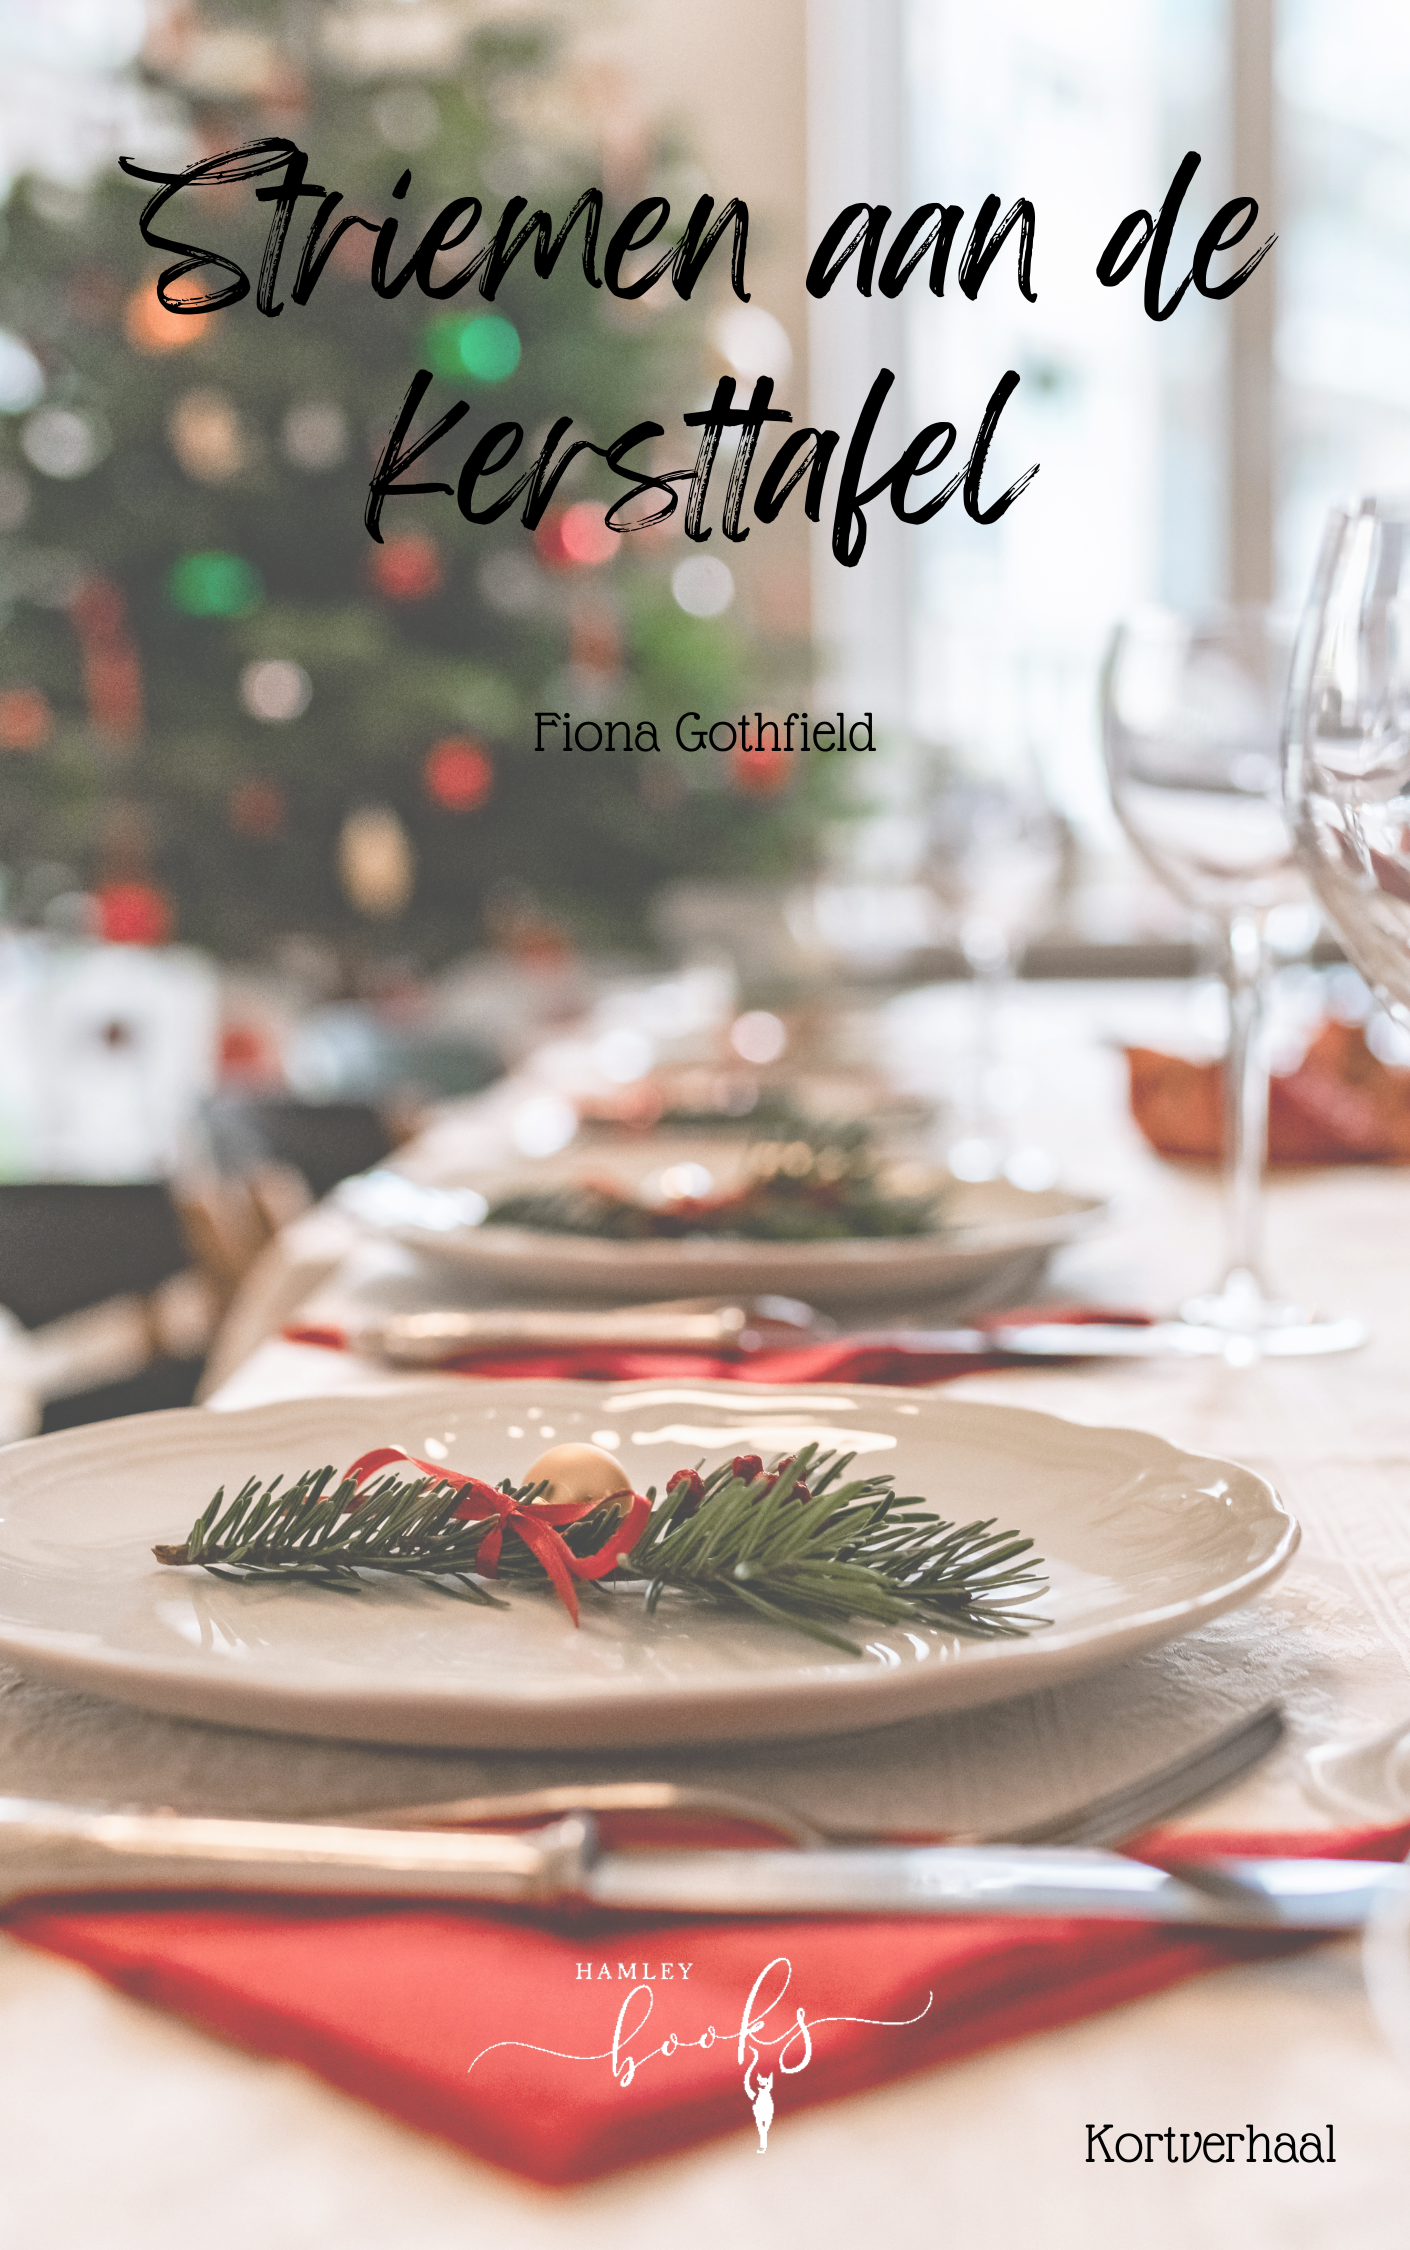 Striemen aan de kersttafel – Fiona Gothfield – Gratis Epub